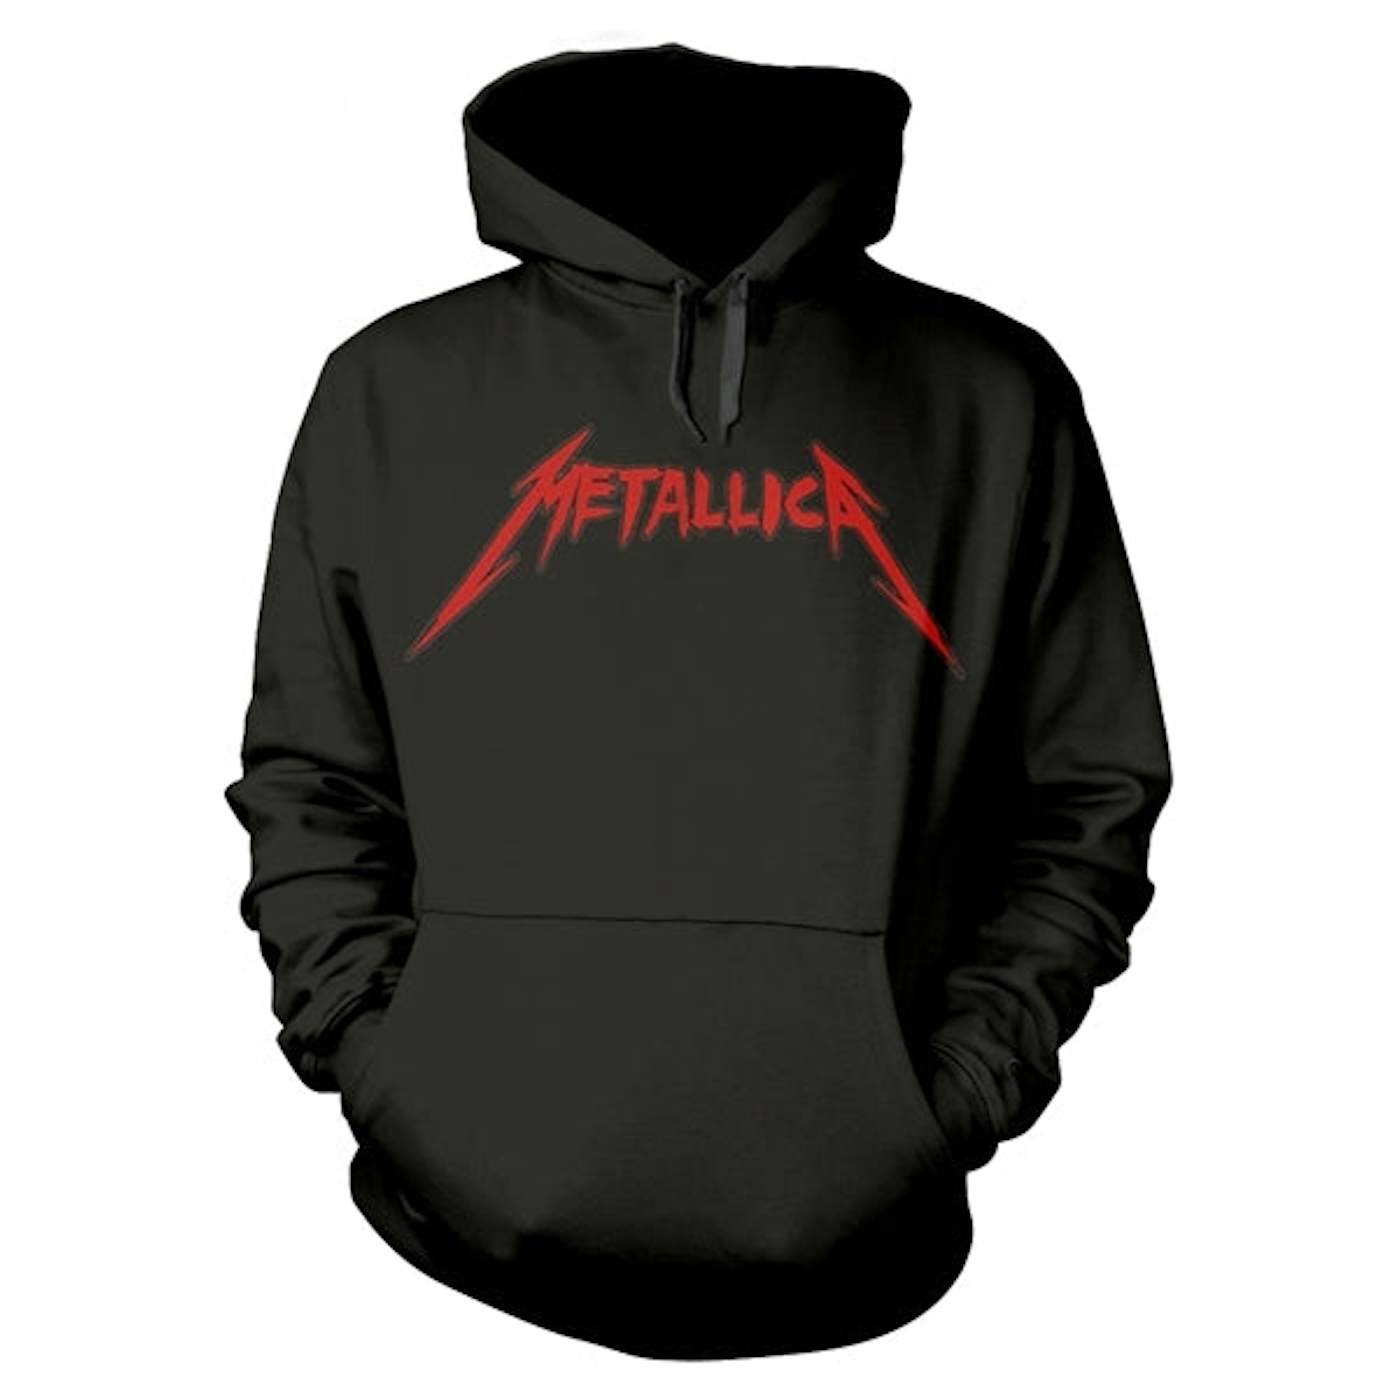 Metallica Hoodie - Skull Screaming 72 Seasons